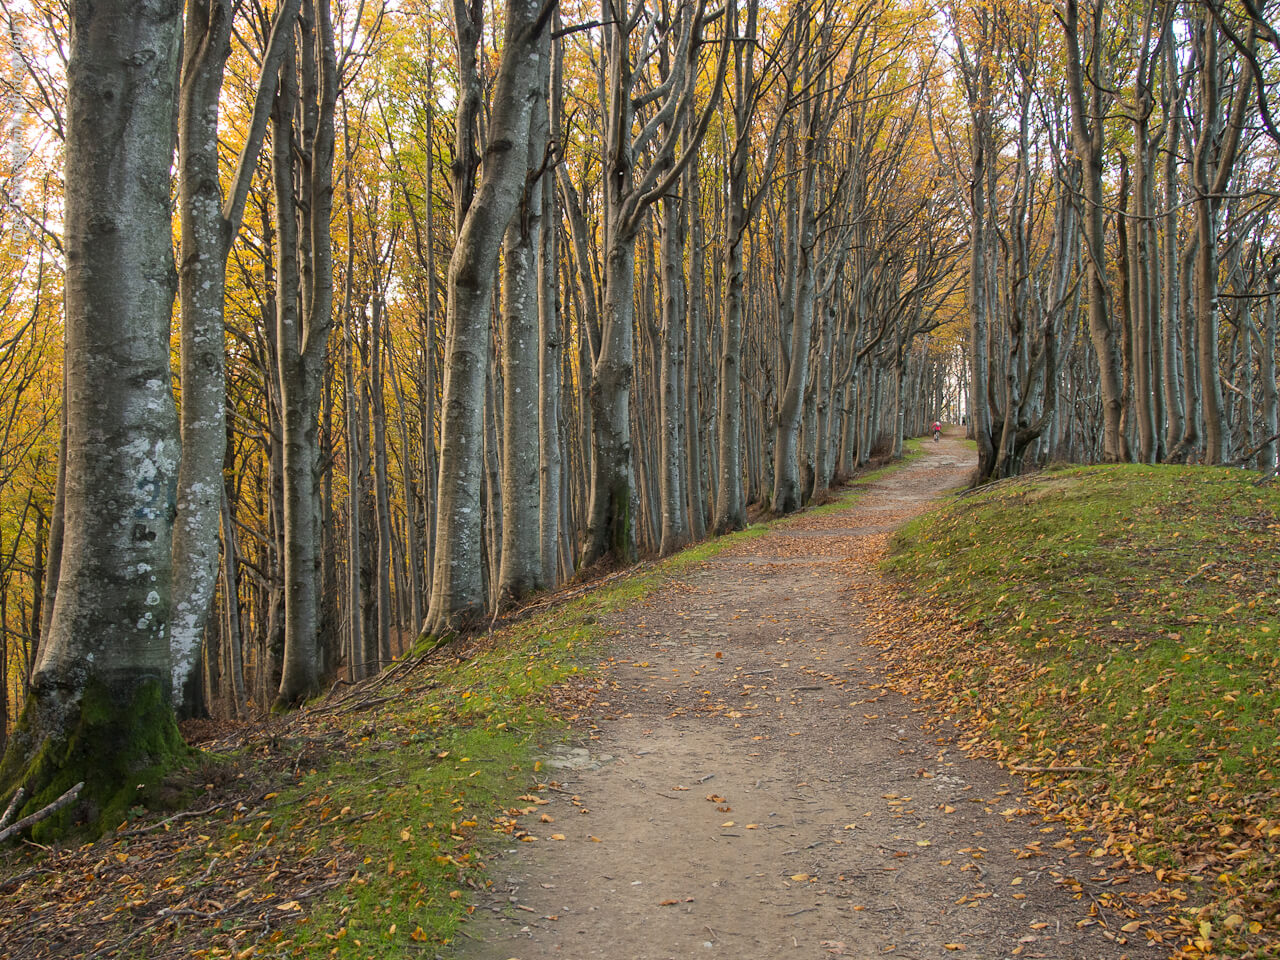 A trail inside the forest - Foreste Casentinesi National Park, near Poppi 